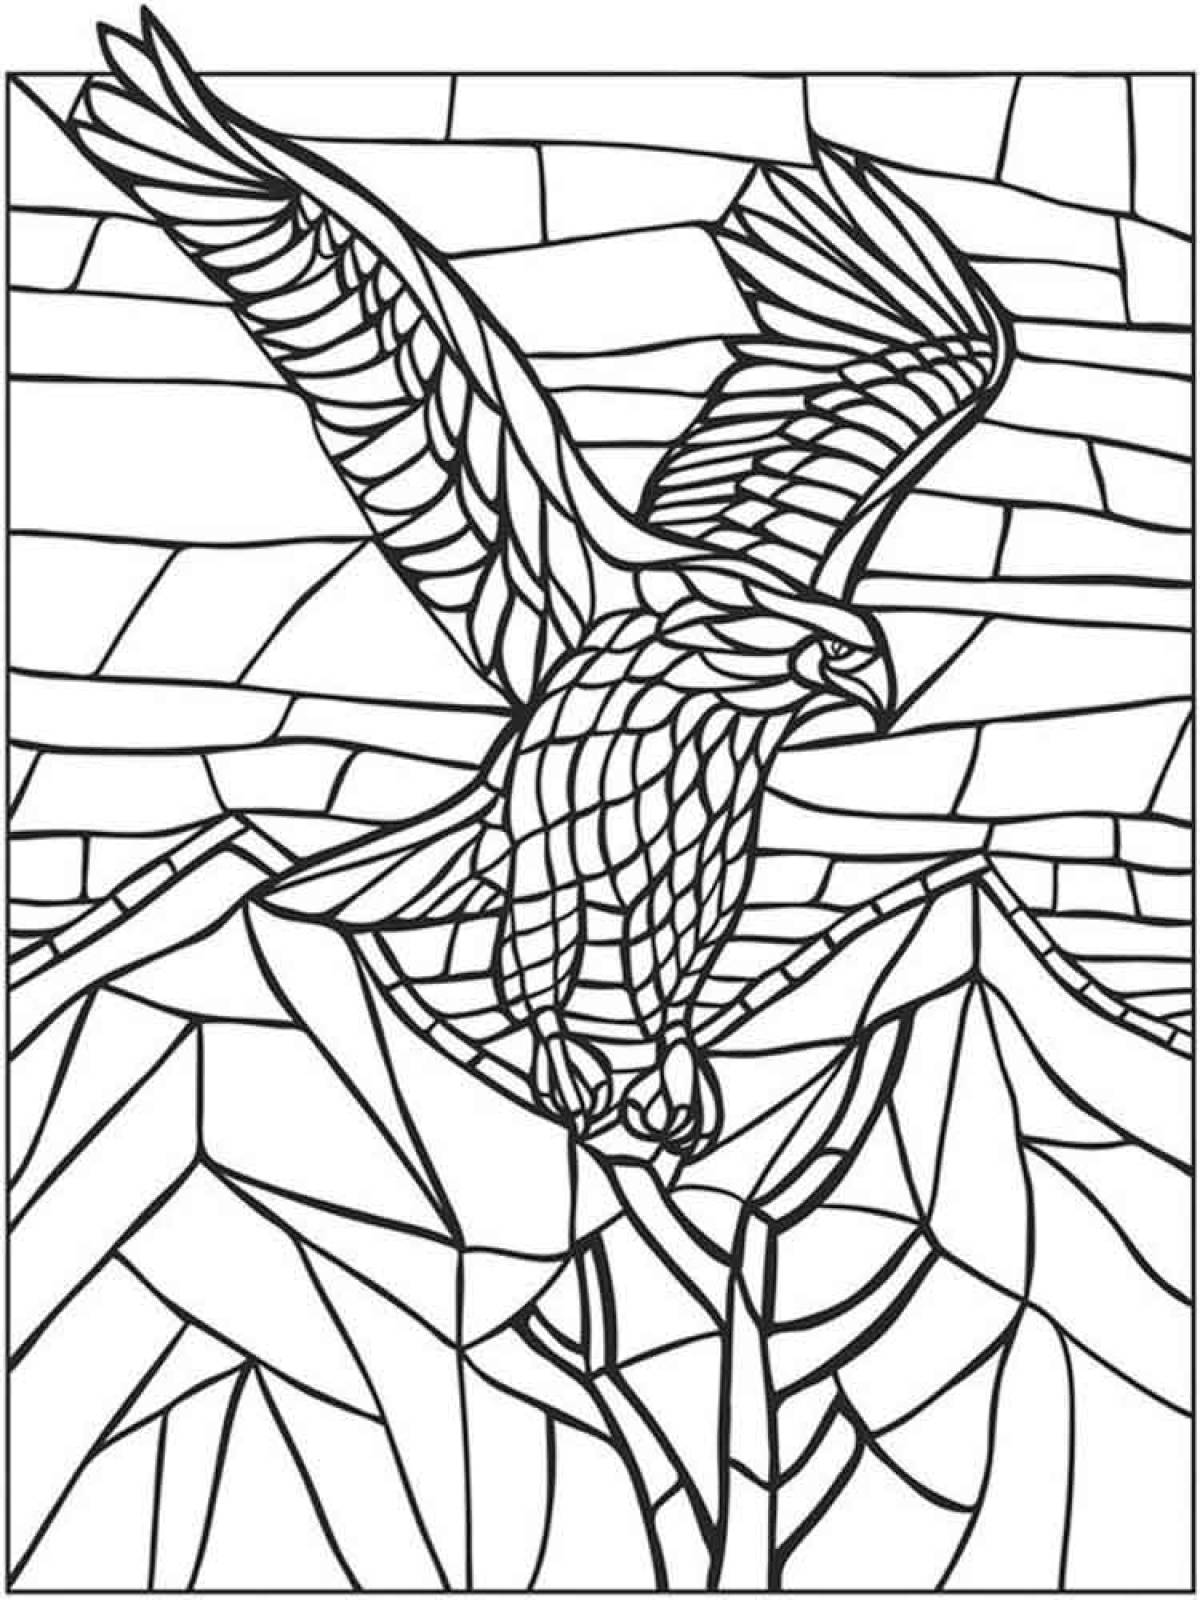 Mosaic eagle